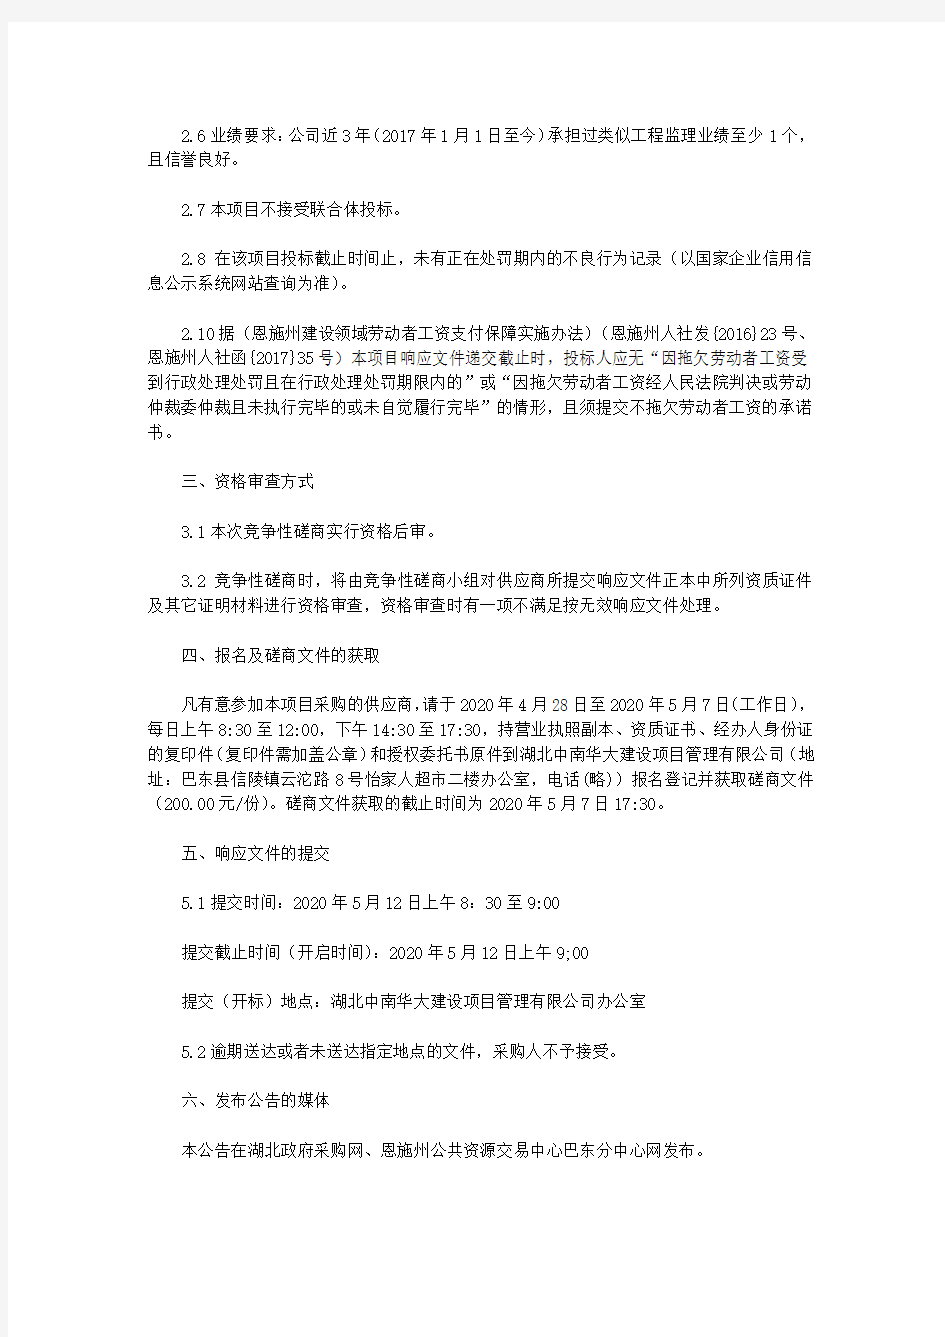 巴东县柚子树、神农溪大桥危桥改造工程监理机构竞争性磋商公告(2020)